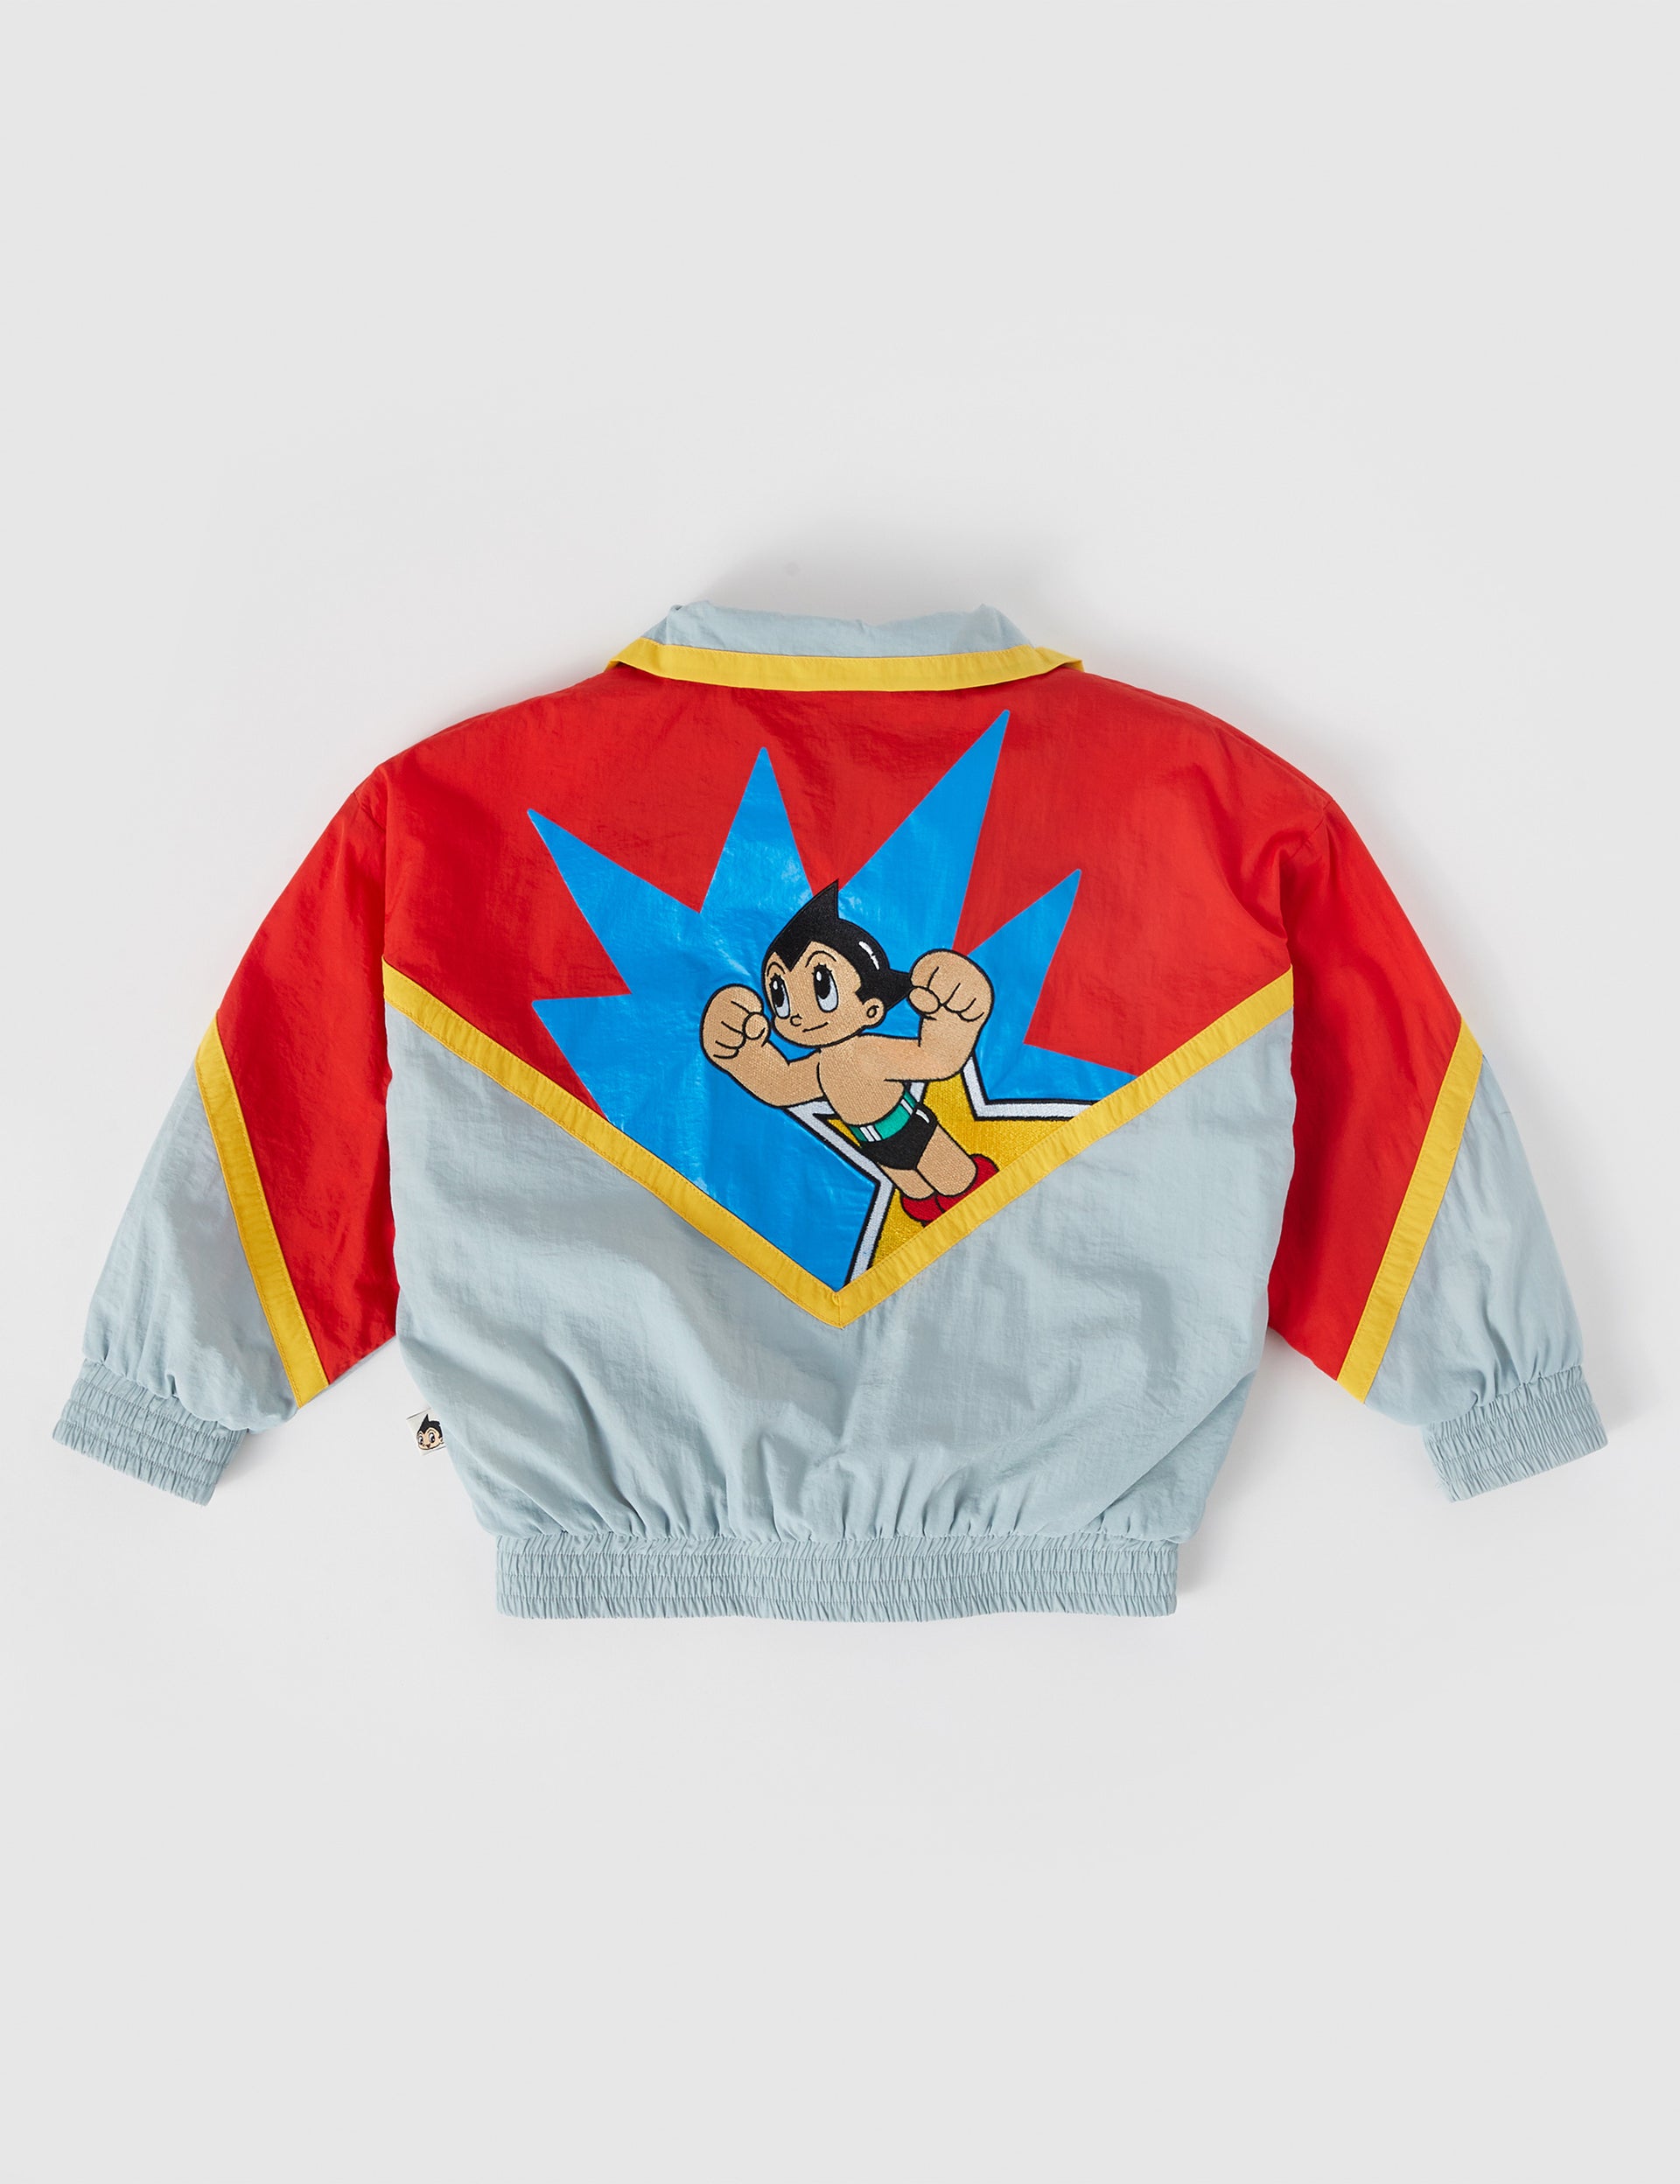 Astro Boy The Mighty Atom Parachute Jacket